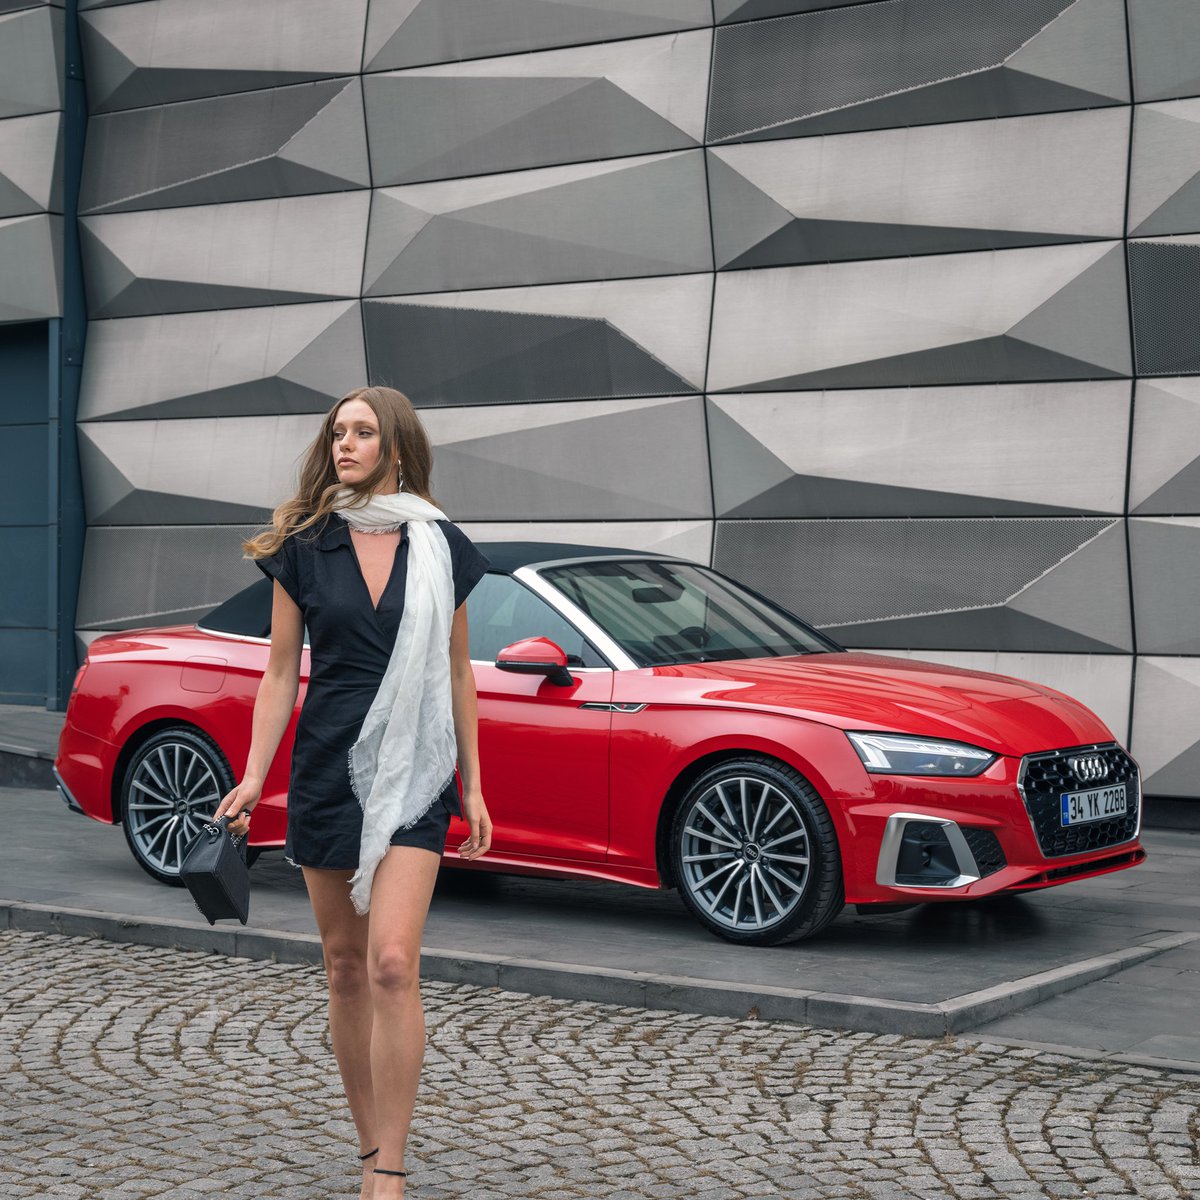 İkonik, büyüleyici, stil sahibi. #A5Cabriolet #Audi #LivingProgress